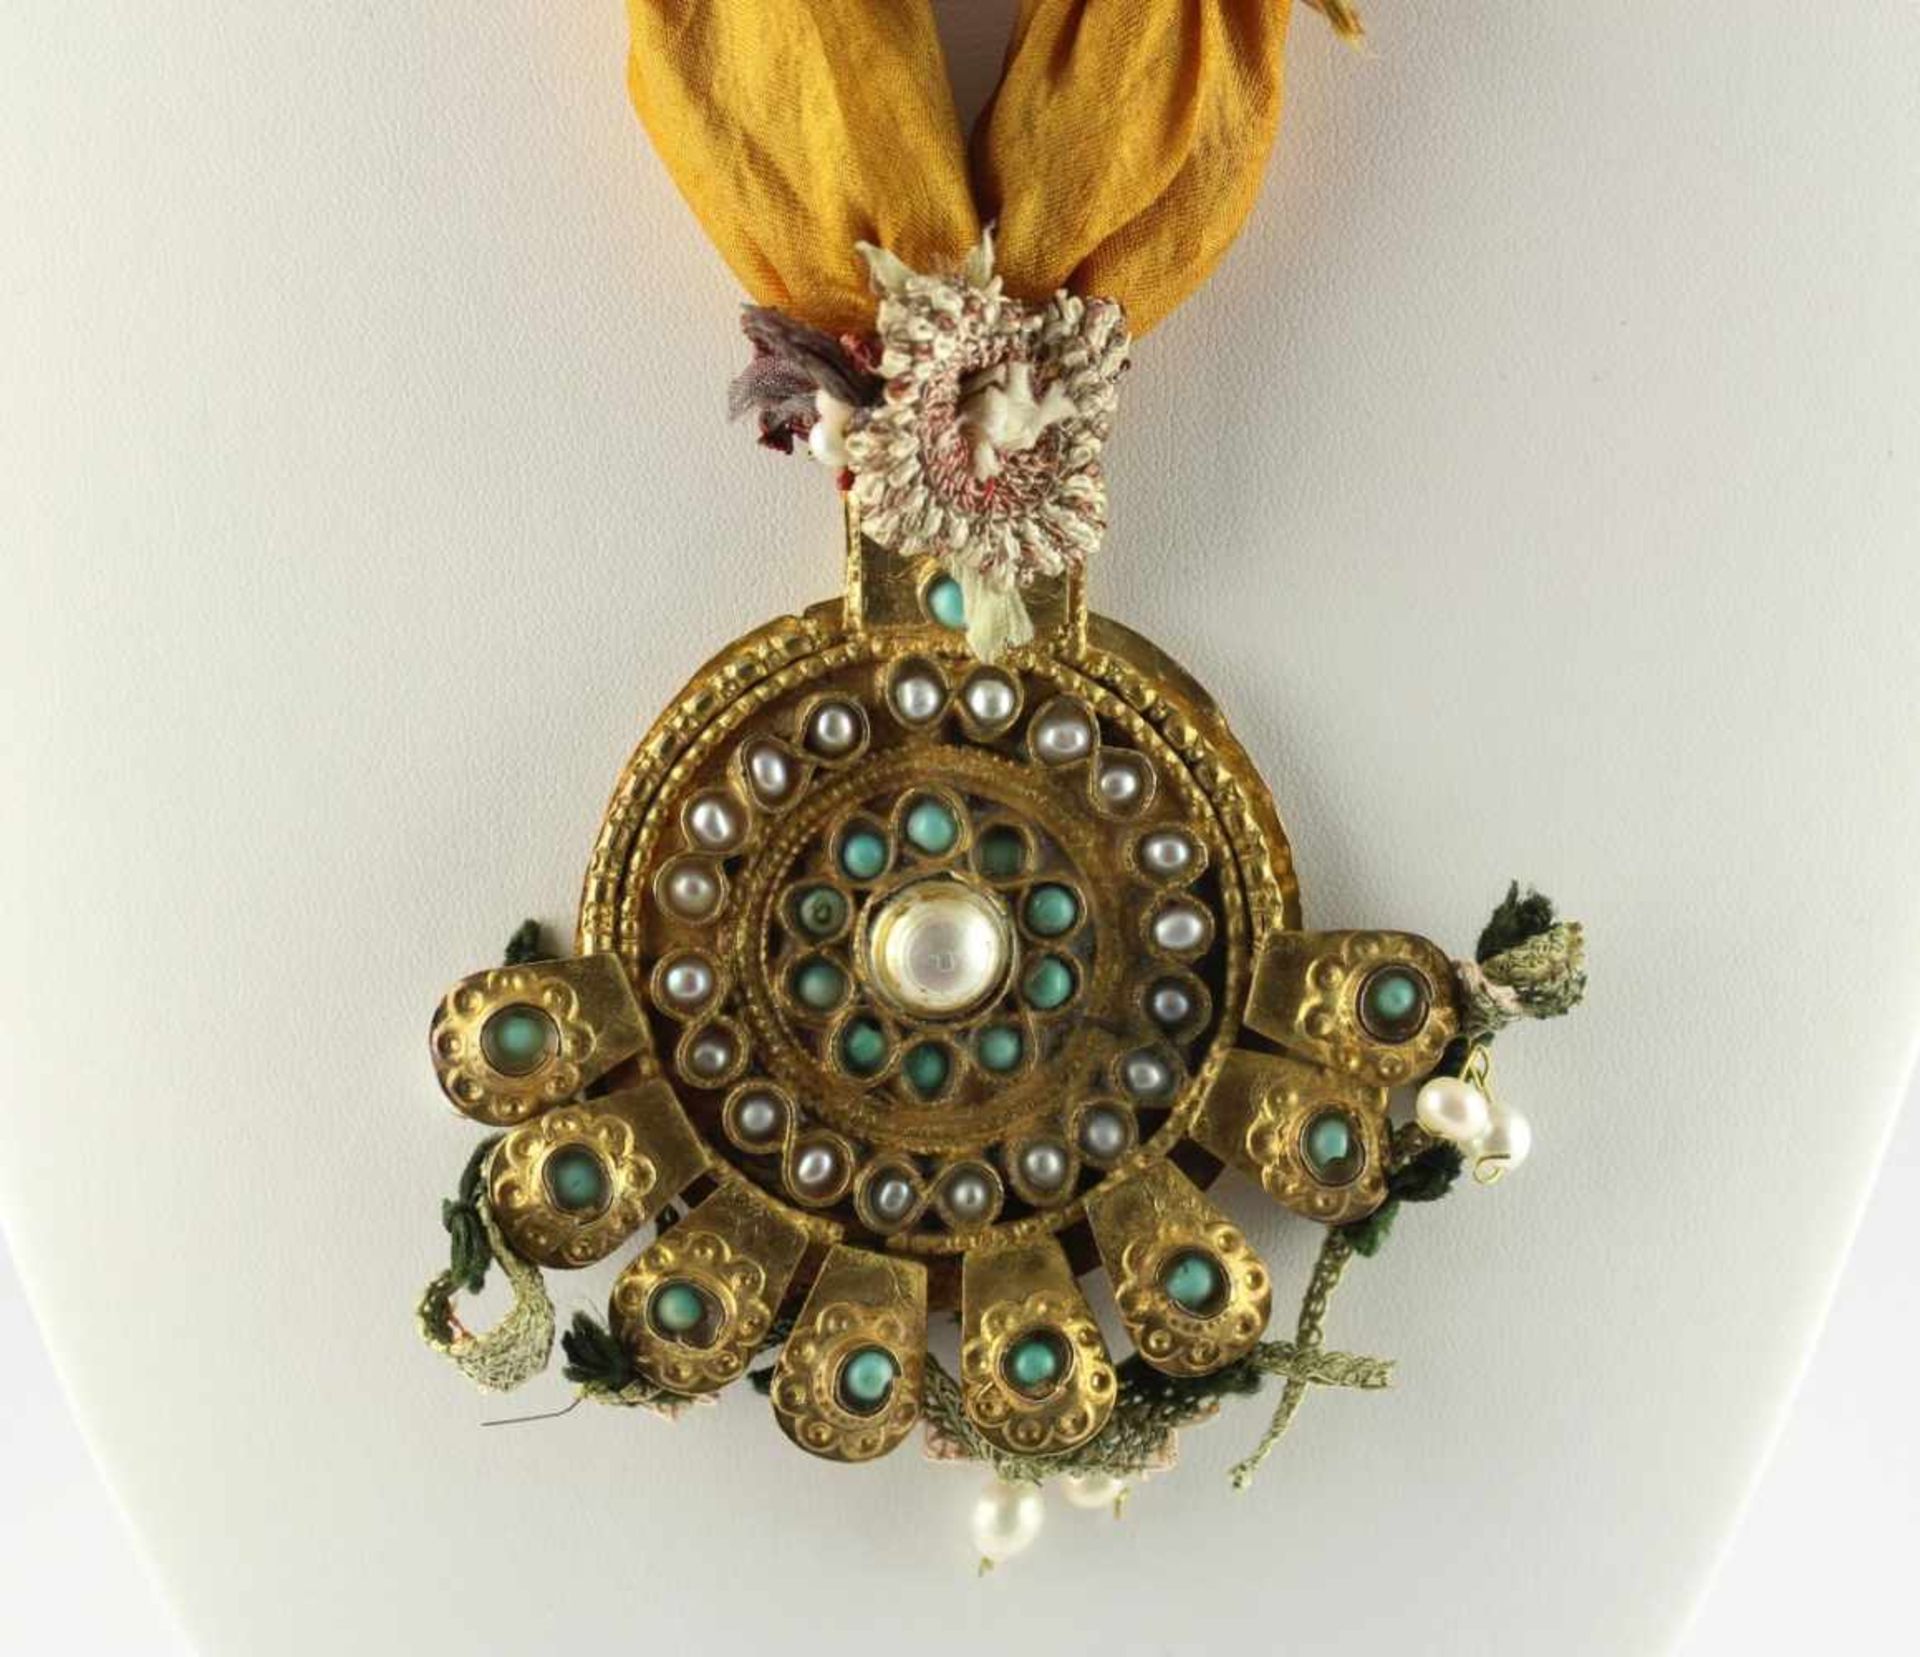 TRACHTENKETTE, Silberlegierung, besetzt mit Türkisen und Perlen, an Seidenband, USBEKISTAN - Image 2 of 2